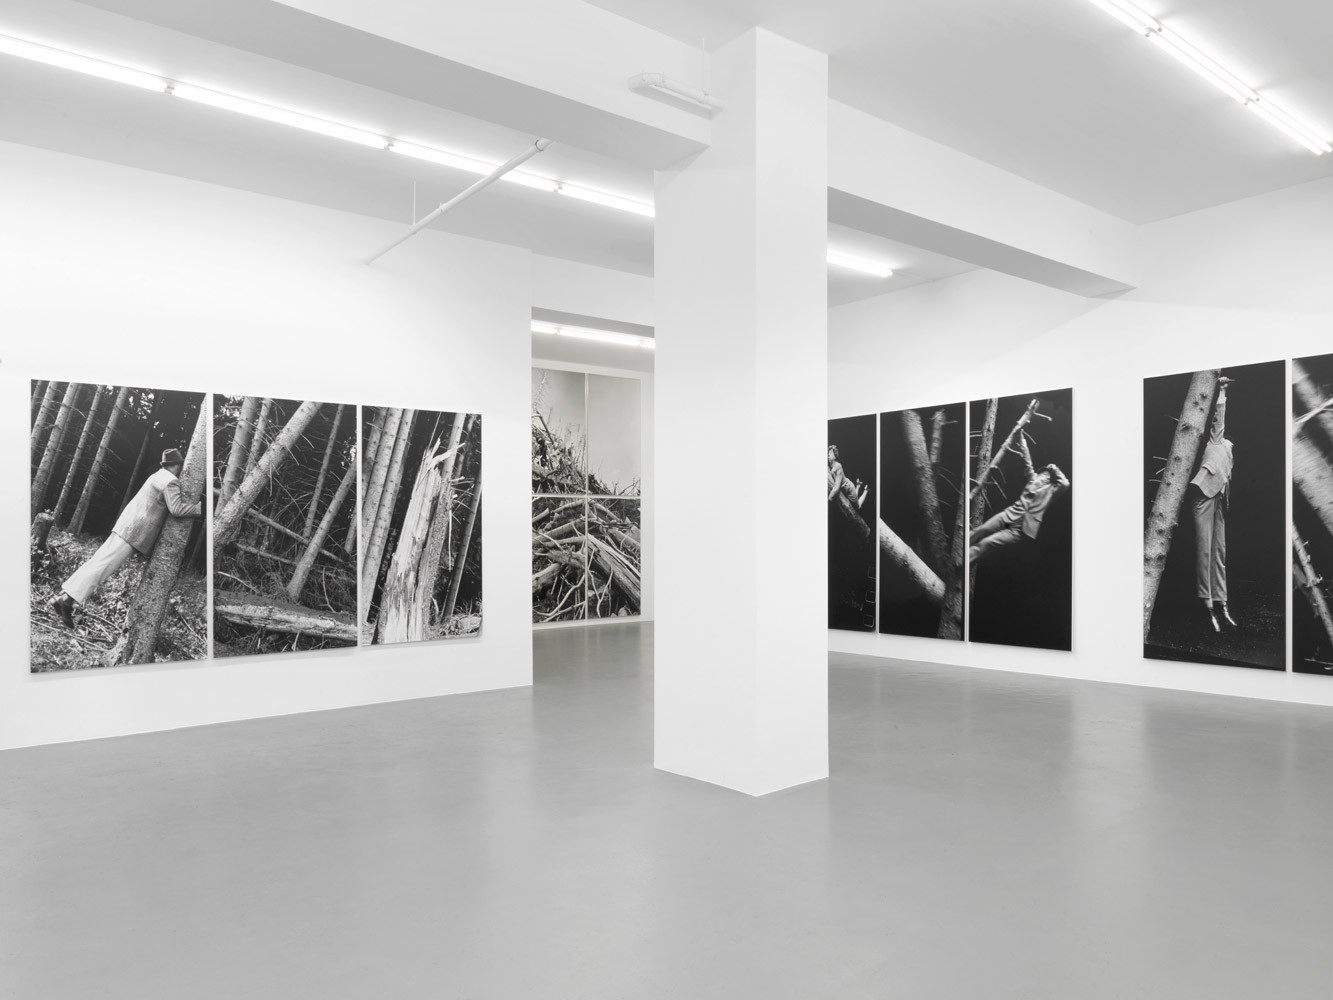 Anna & Bernhard Blume, ‘Im Wald’, Installationsansicht, Buchmann Galerie, 2014